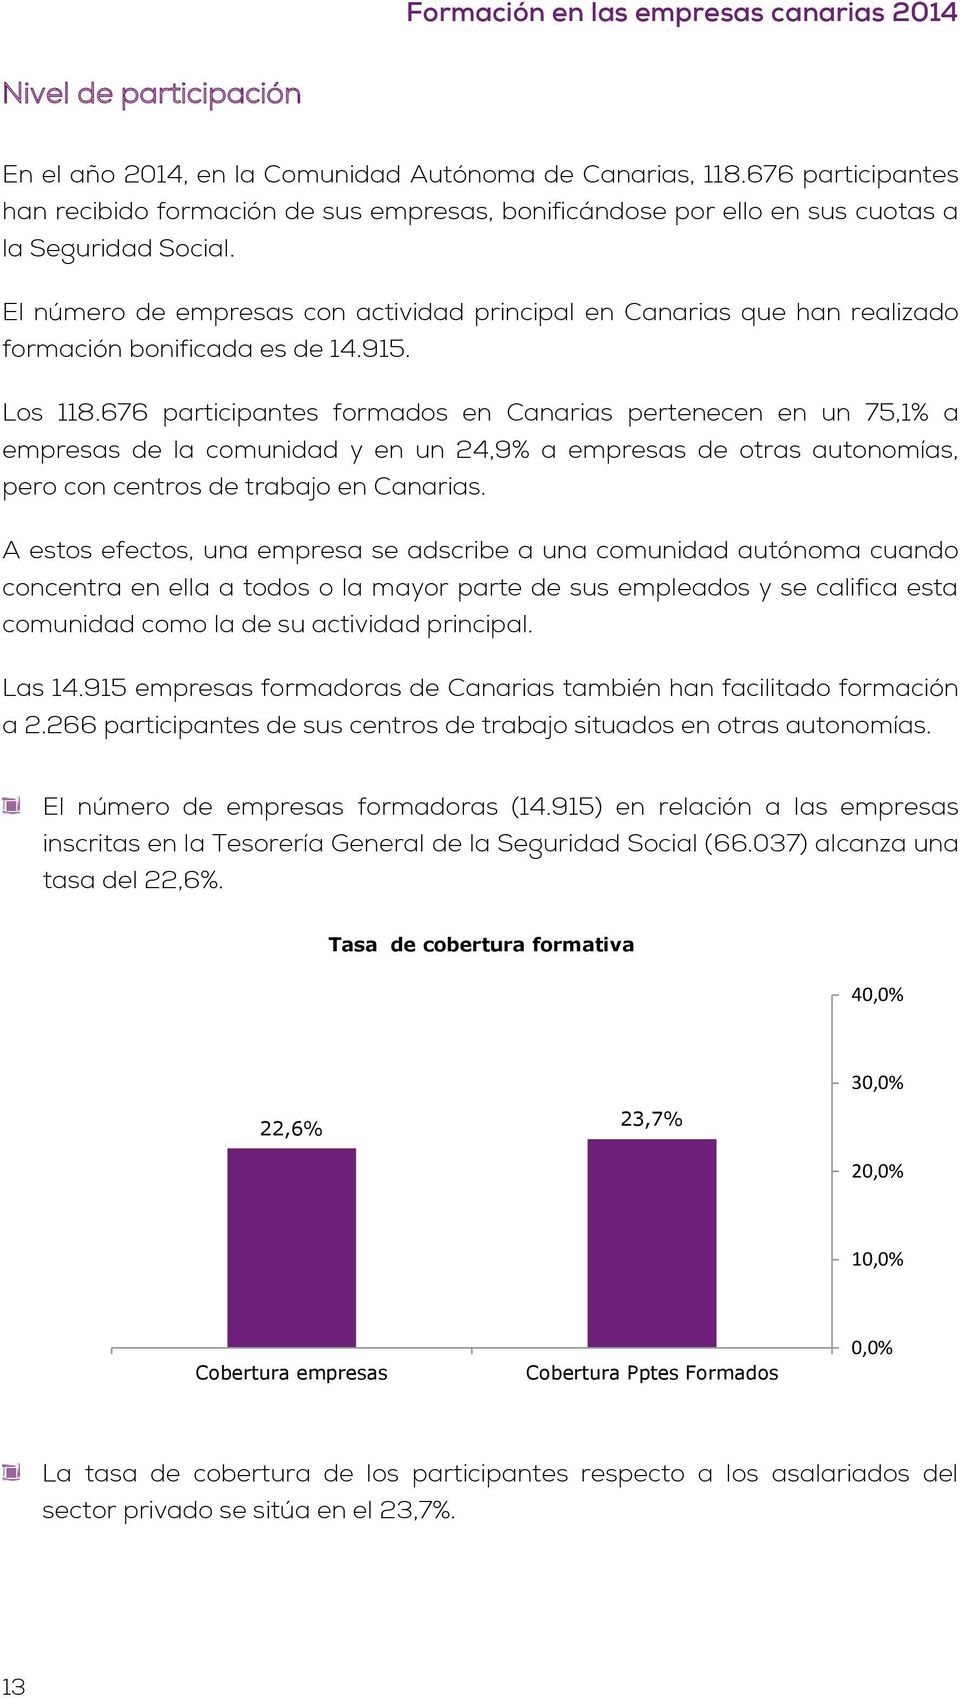 676 participantes formados en Canarias pertenecen en un 75,1% a empresas de la comunidad y en un 24,9% a empresas de otras autonomías, pero con centros de trabajo en Canarias.